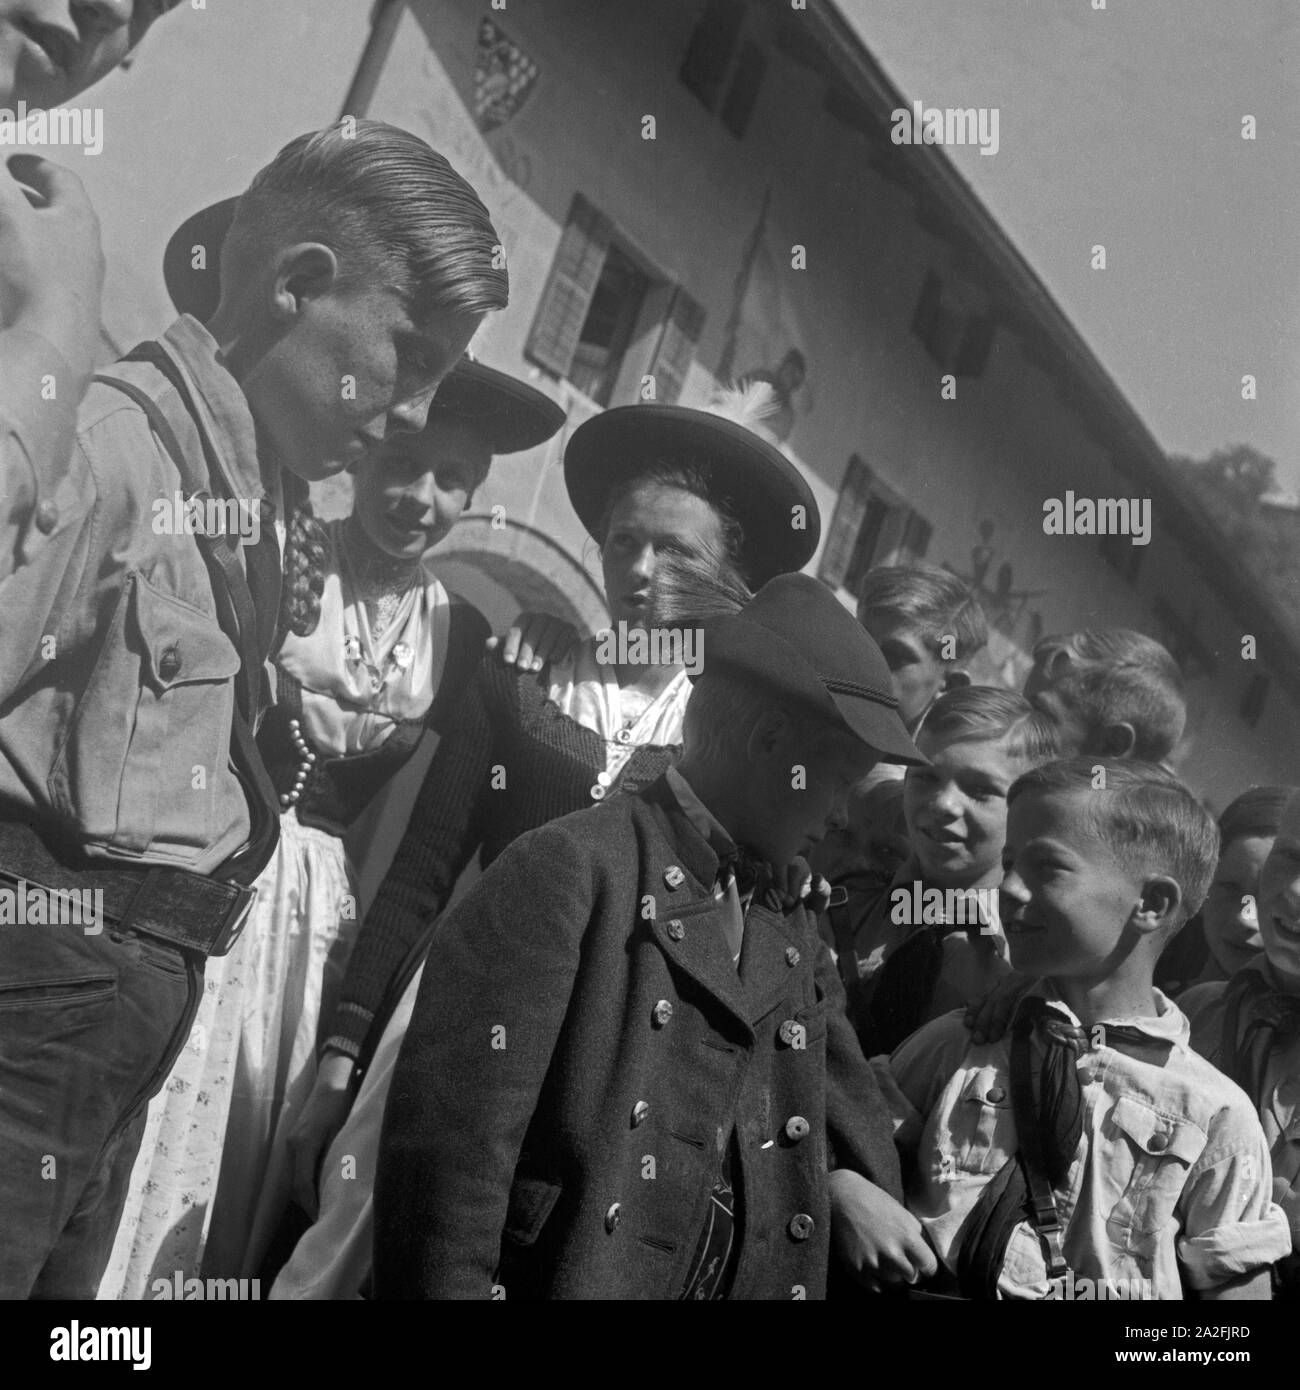 Jungen aus der Hitlerjugend und Kinder aus Berchtesgaden treffen aufeinander, 1930er Jahre. I ragazzi formano la gioventù hitleriana e bambini da Berchtesgaden incontrarsi, 1930s. Foto Stock